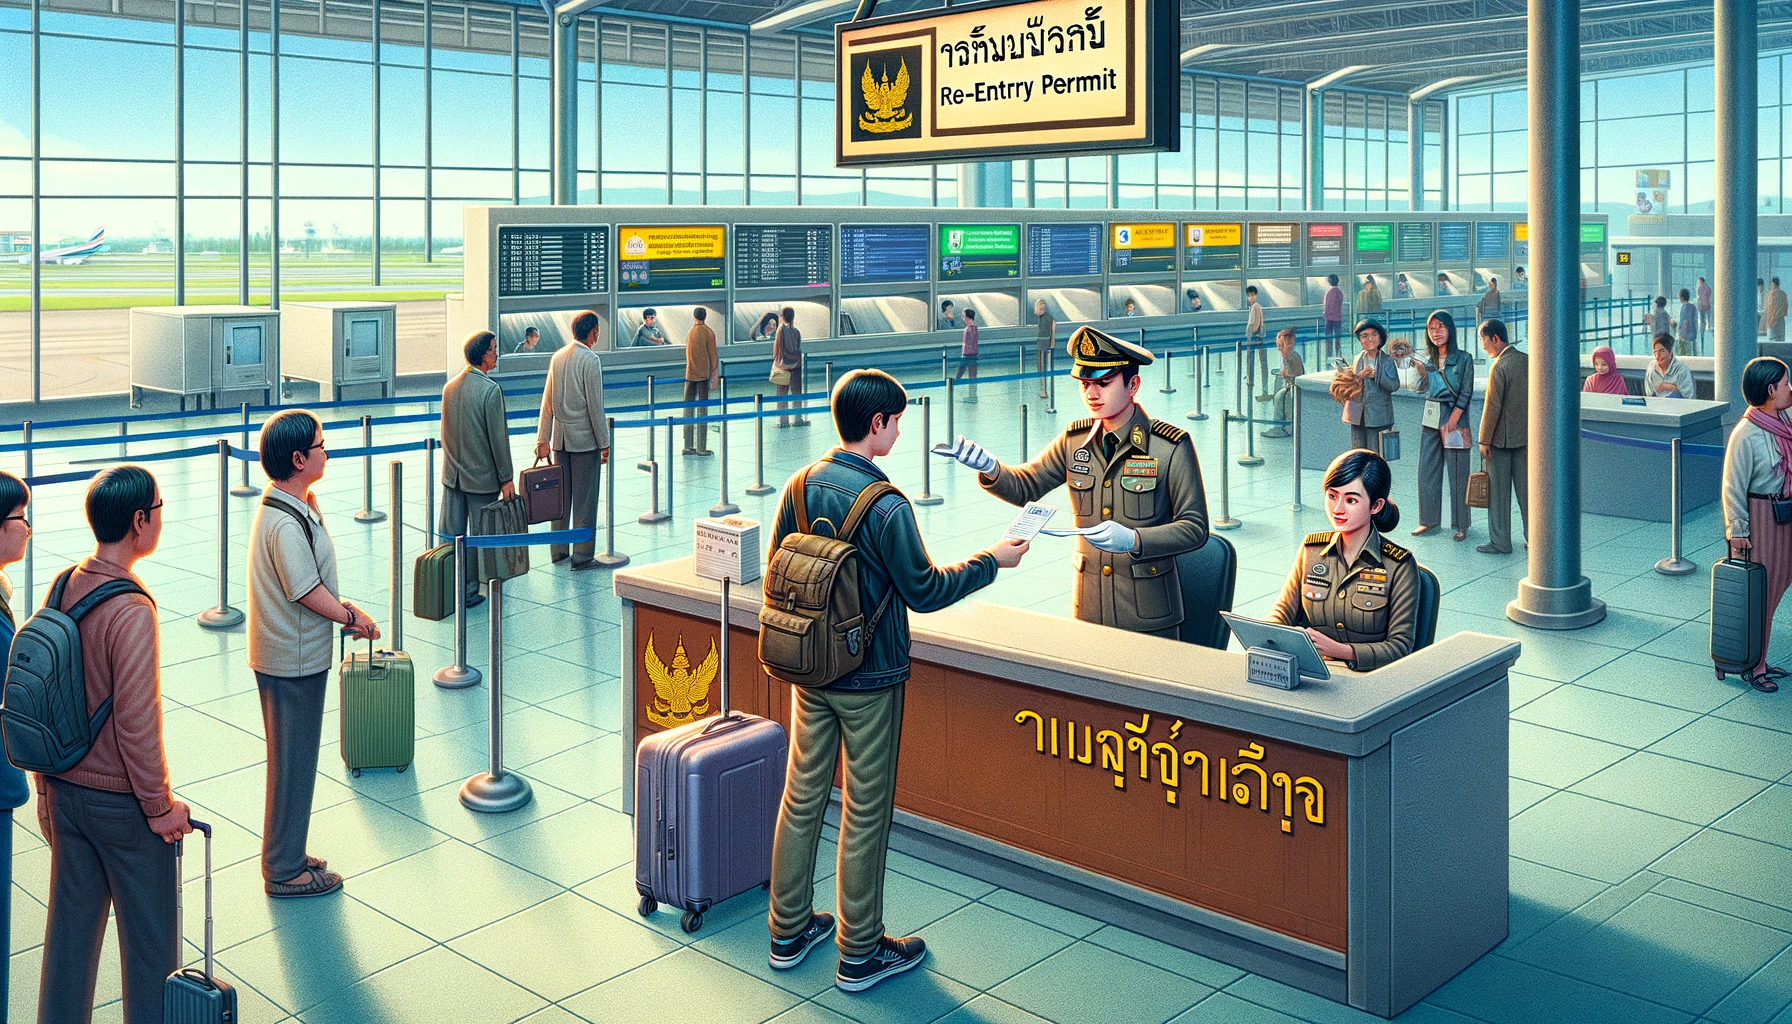 タイの再入国許可証　リエントリーパミット